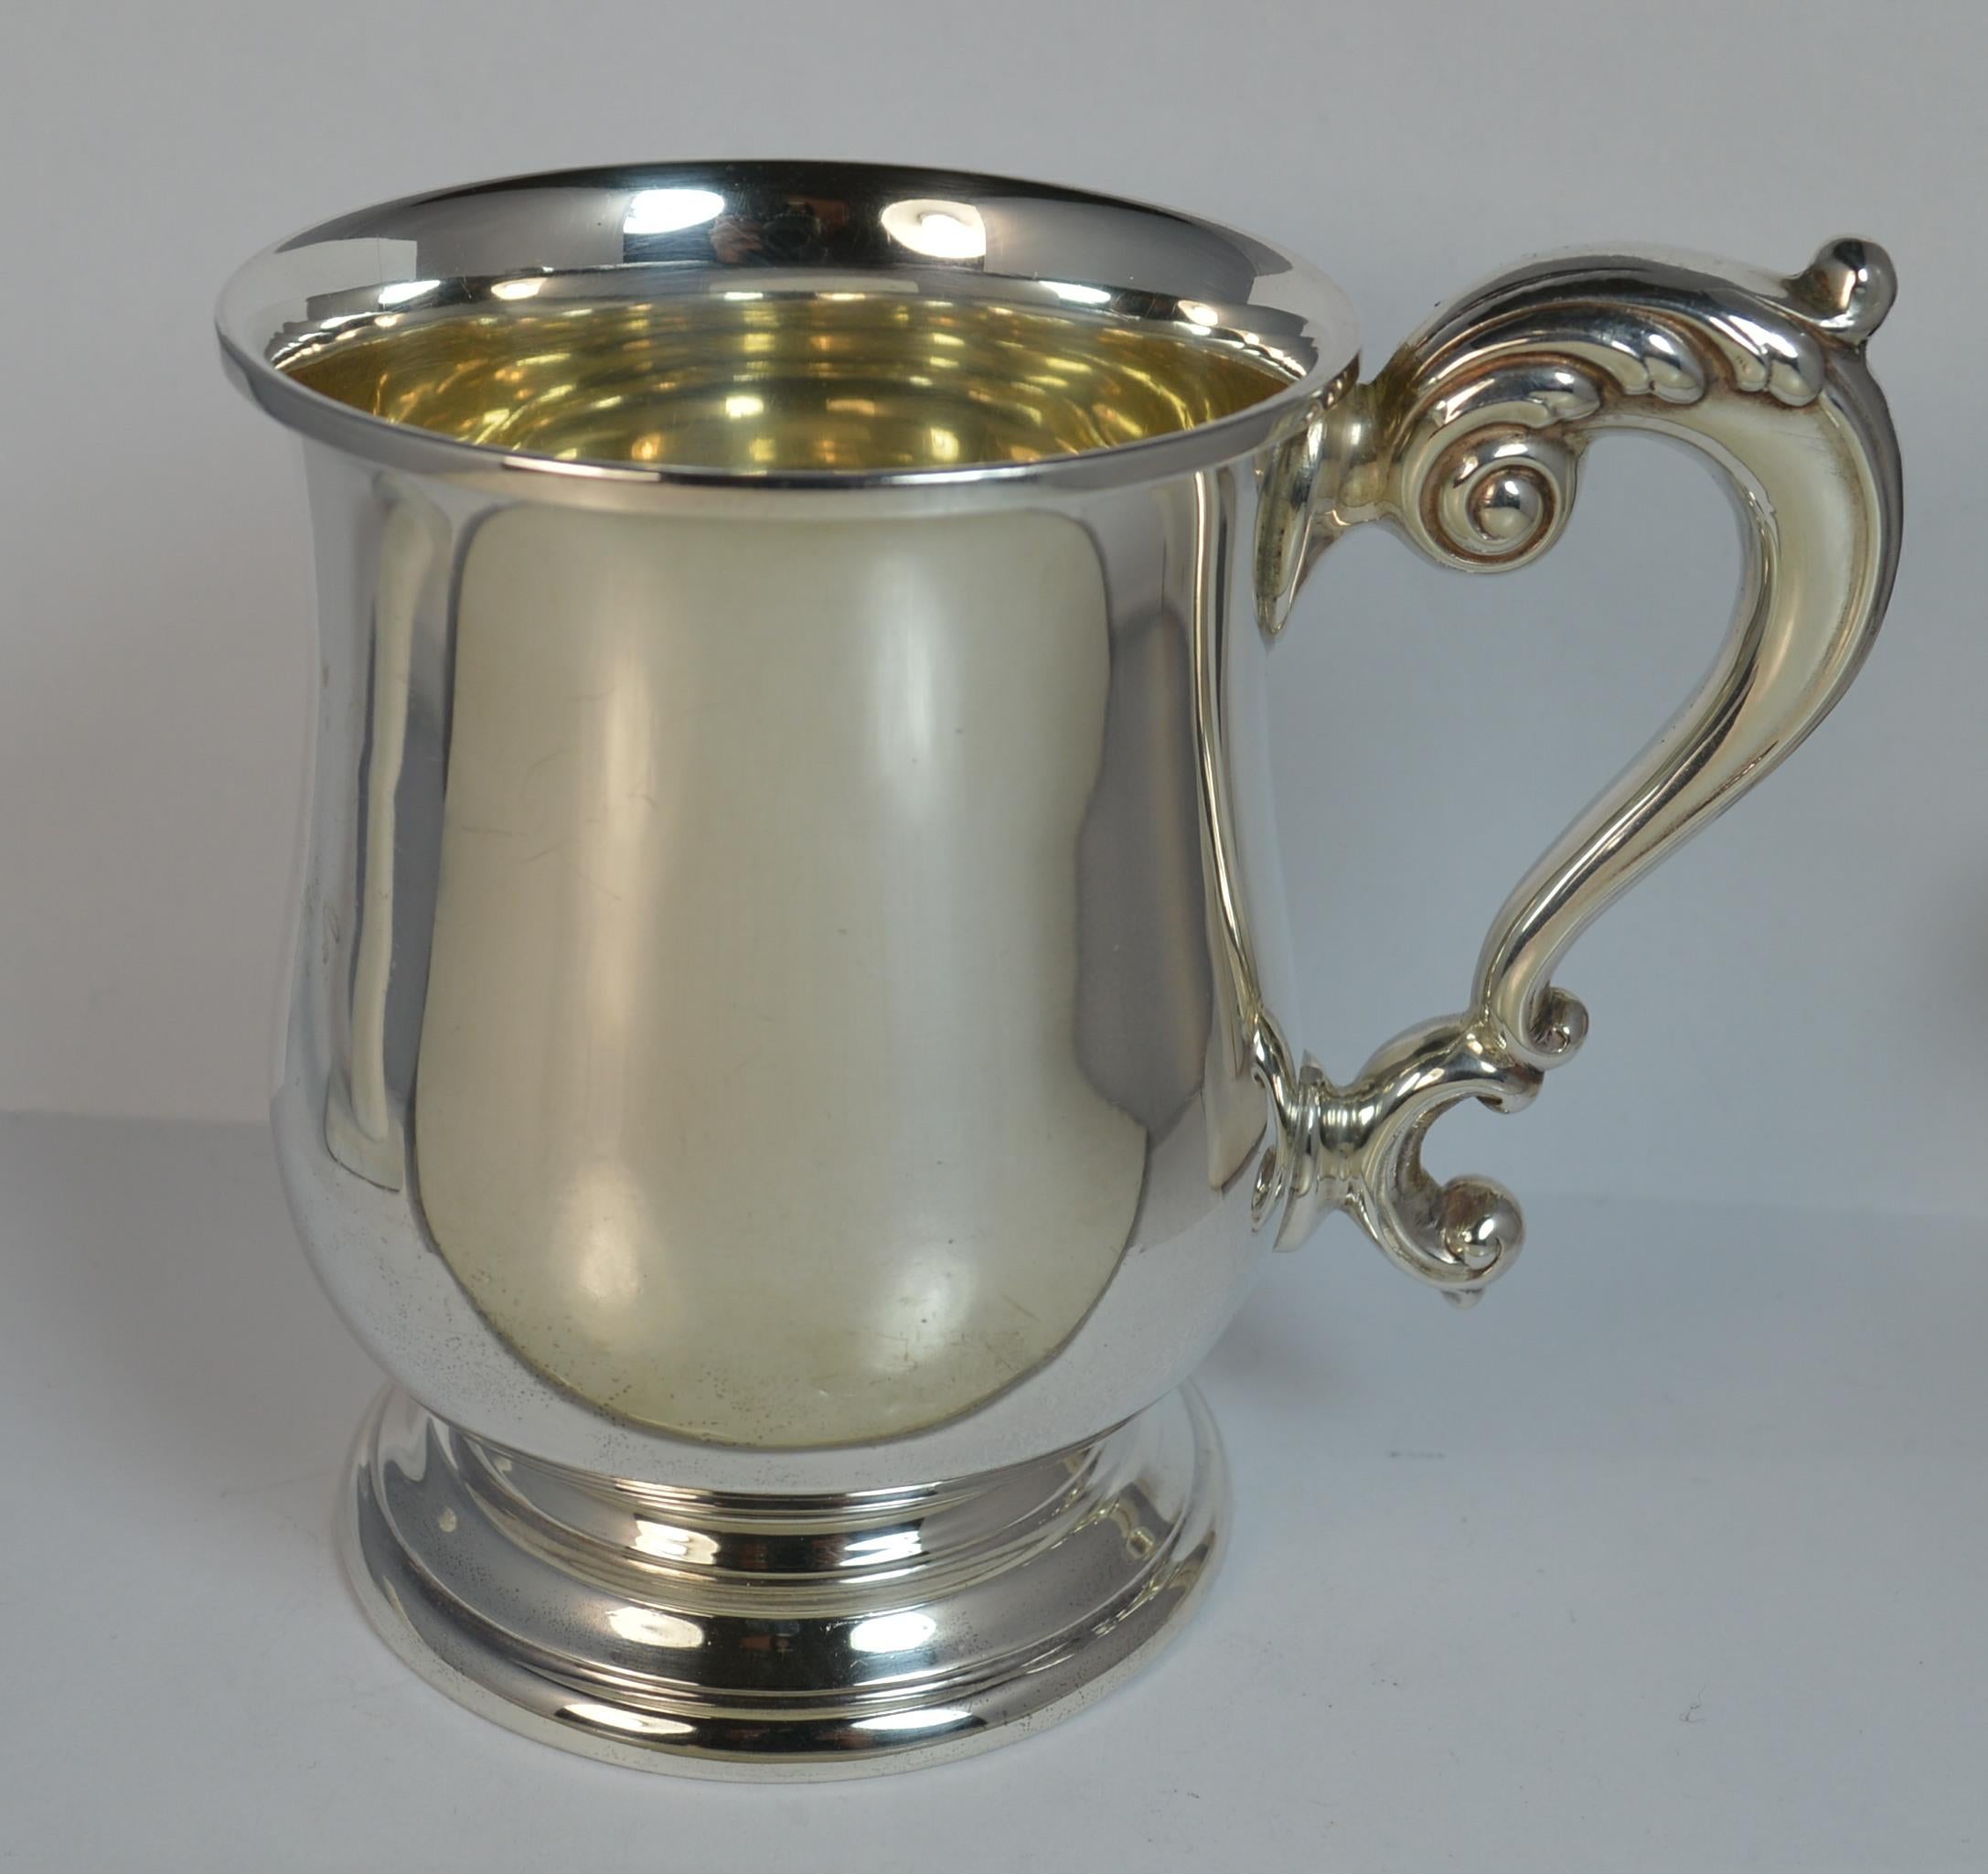 1933 Large and Heavy Hallmarked Silver Cup Mug or Tankard with No Engraving für Damen oder Herren